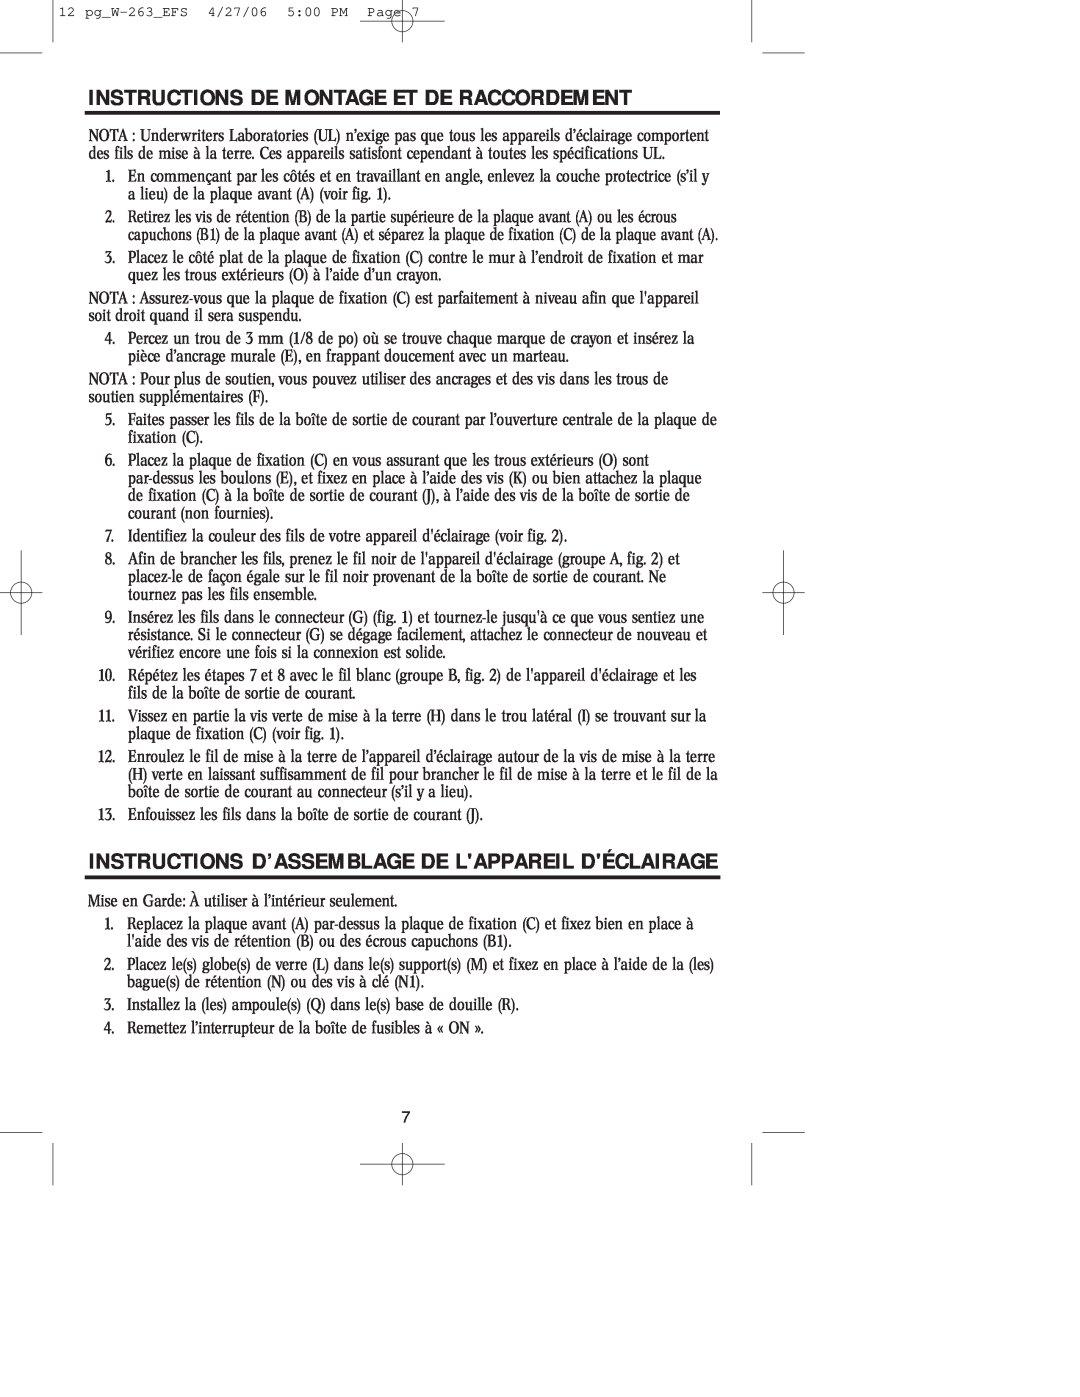 Westinghouse Indoor Lighting fixture owner manual Instructions De Montage Et De Raccordement 